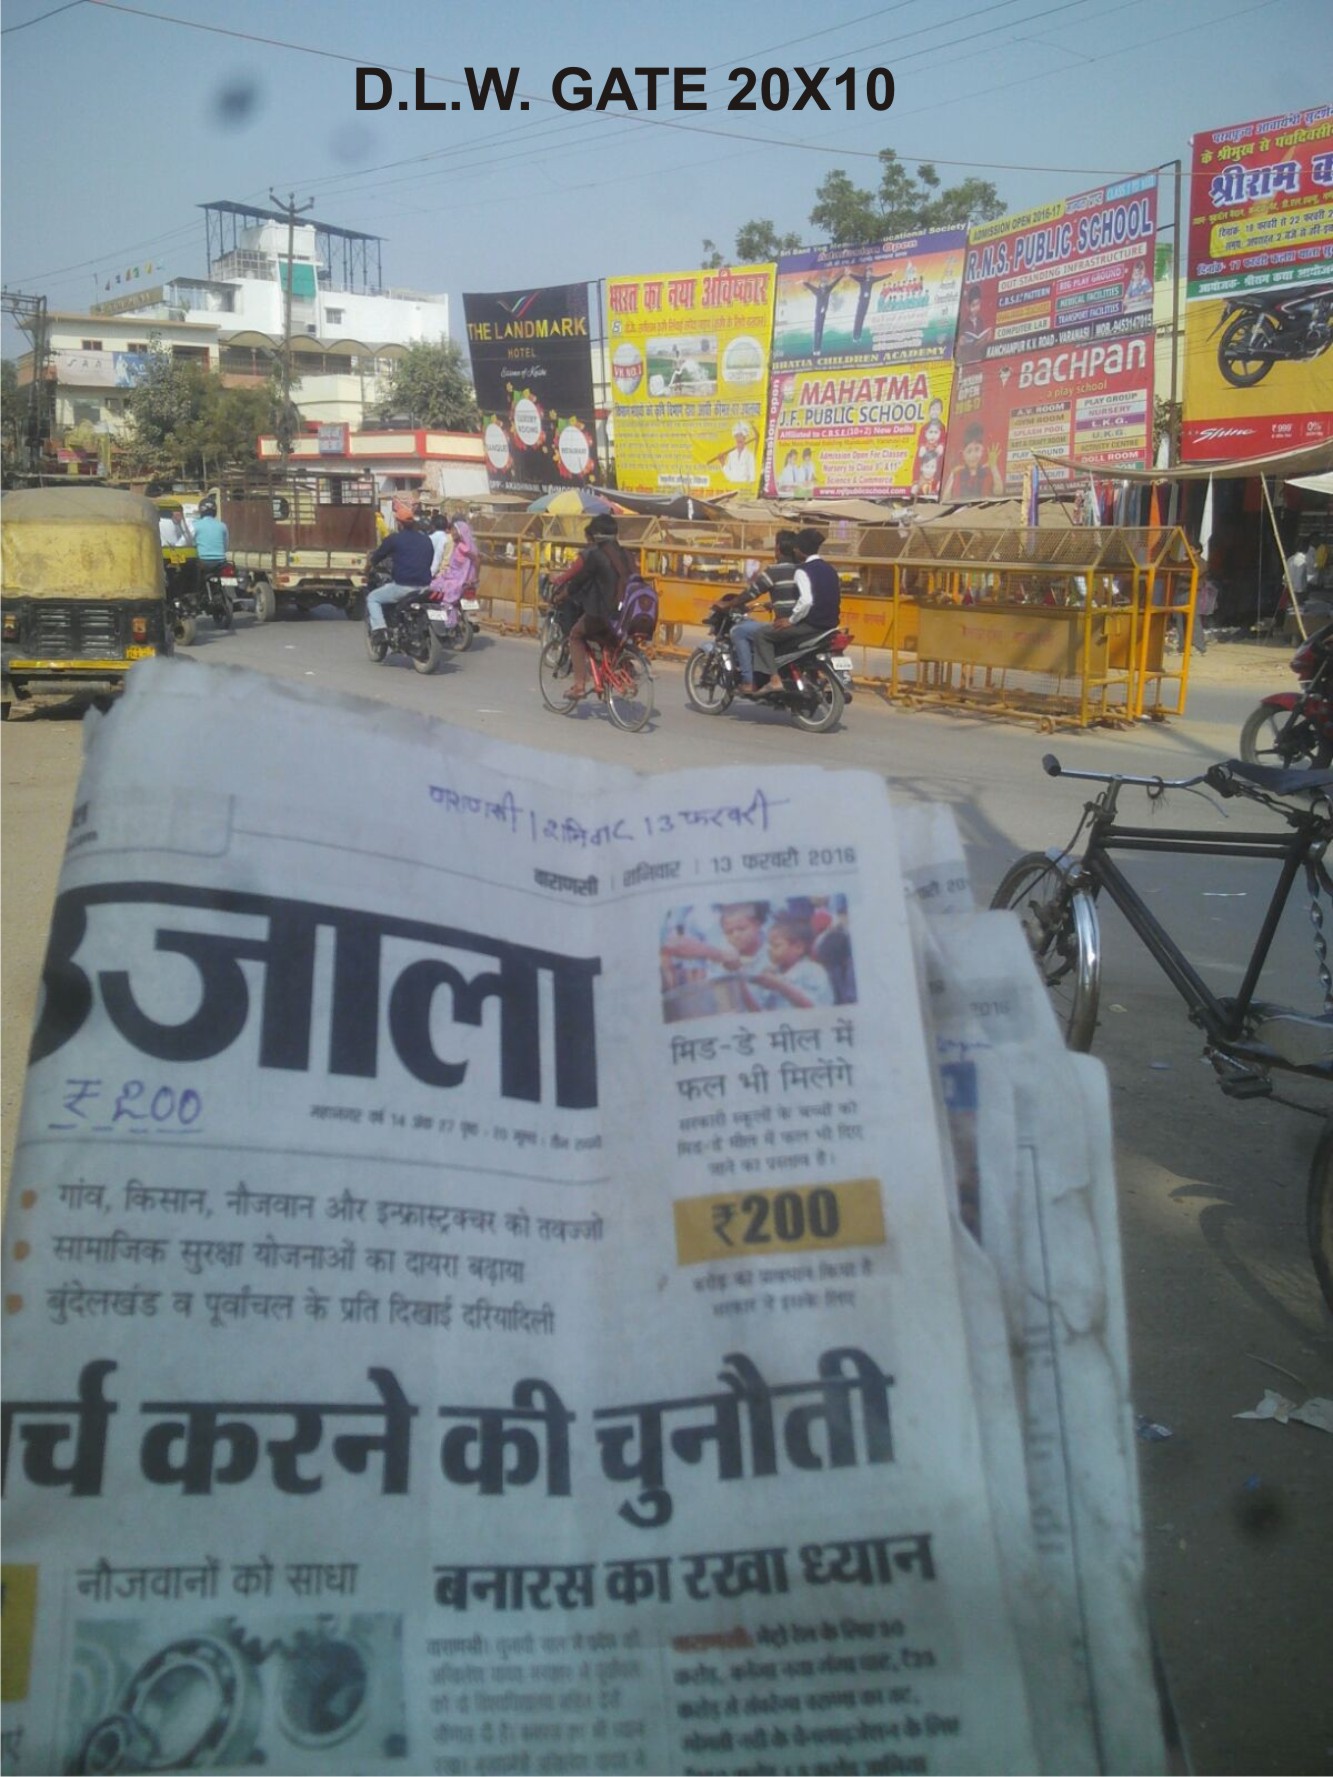  DLW, Varanasi     